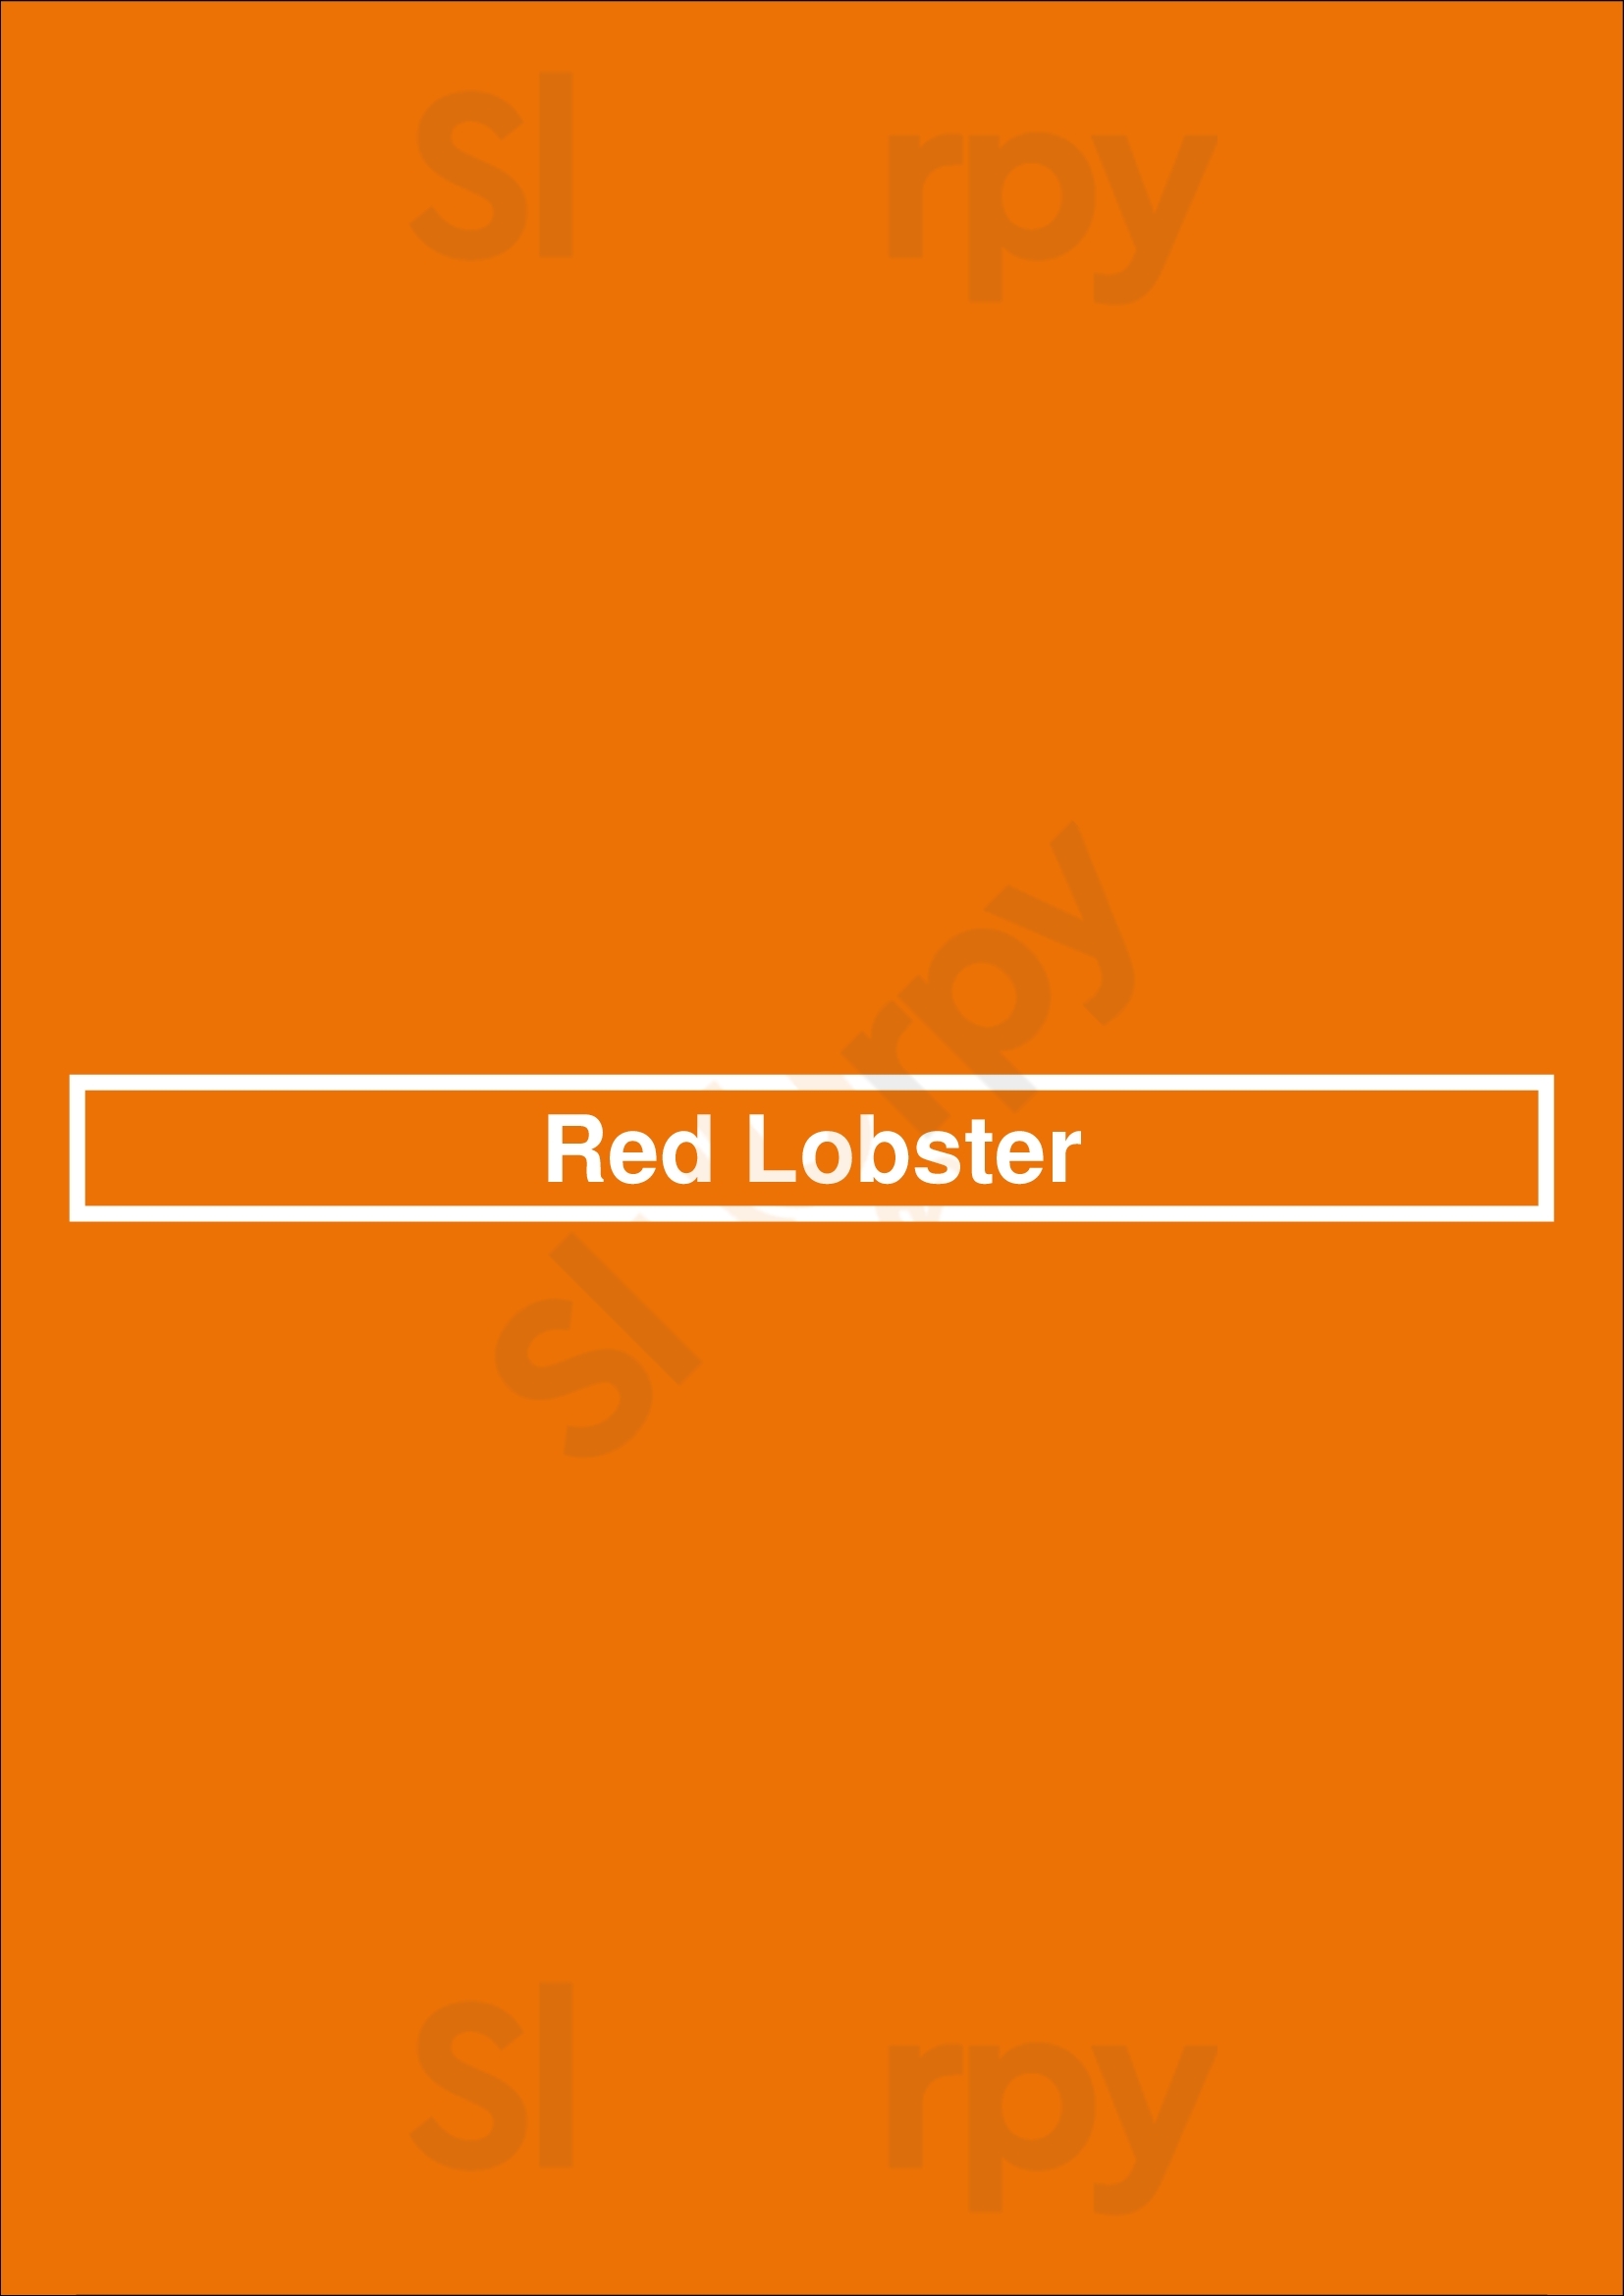 Red Lobster Laredo Menu - 1